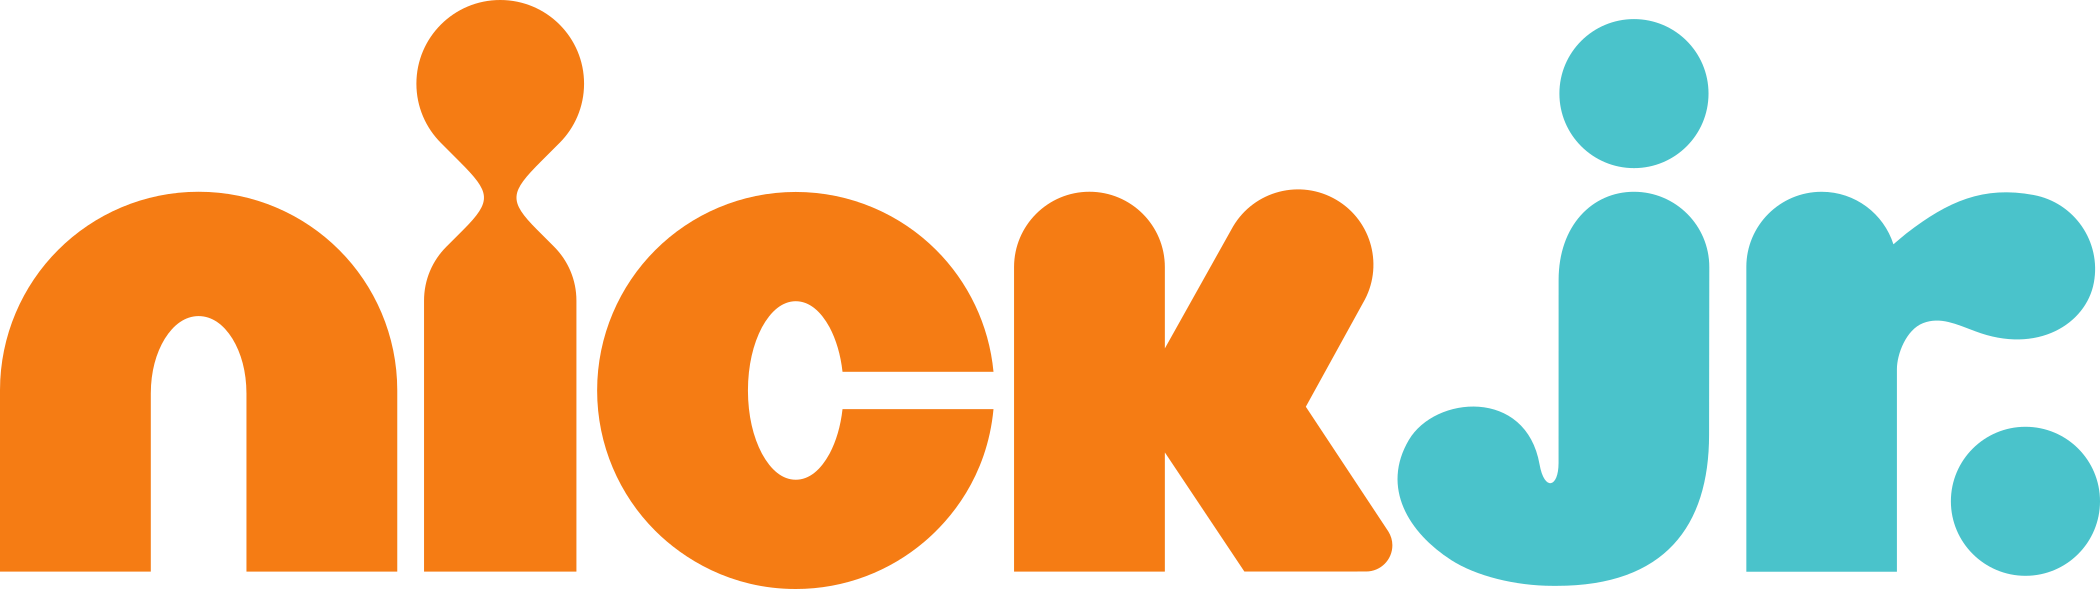 nick jr logo 1 - Nick Jr Logo